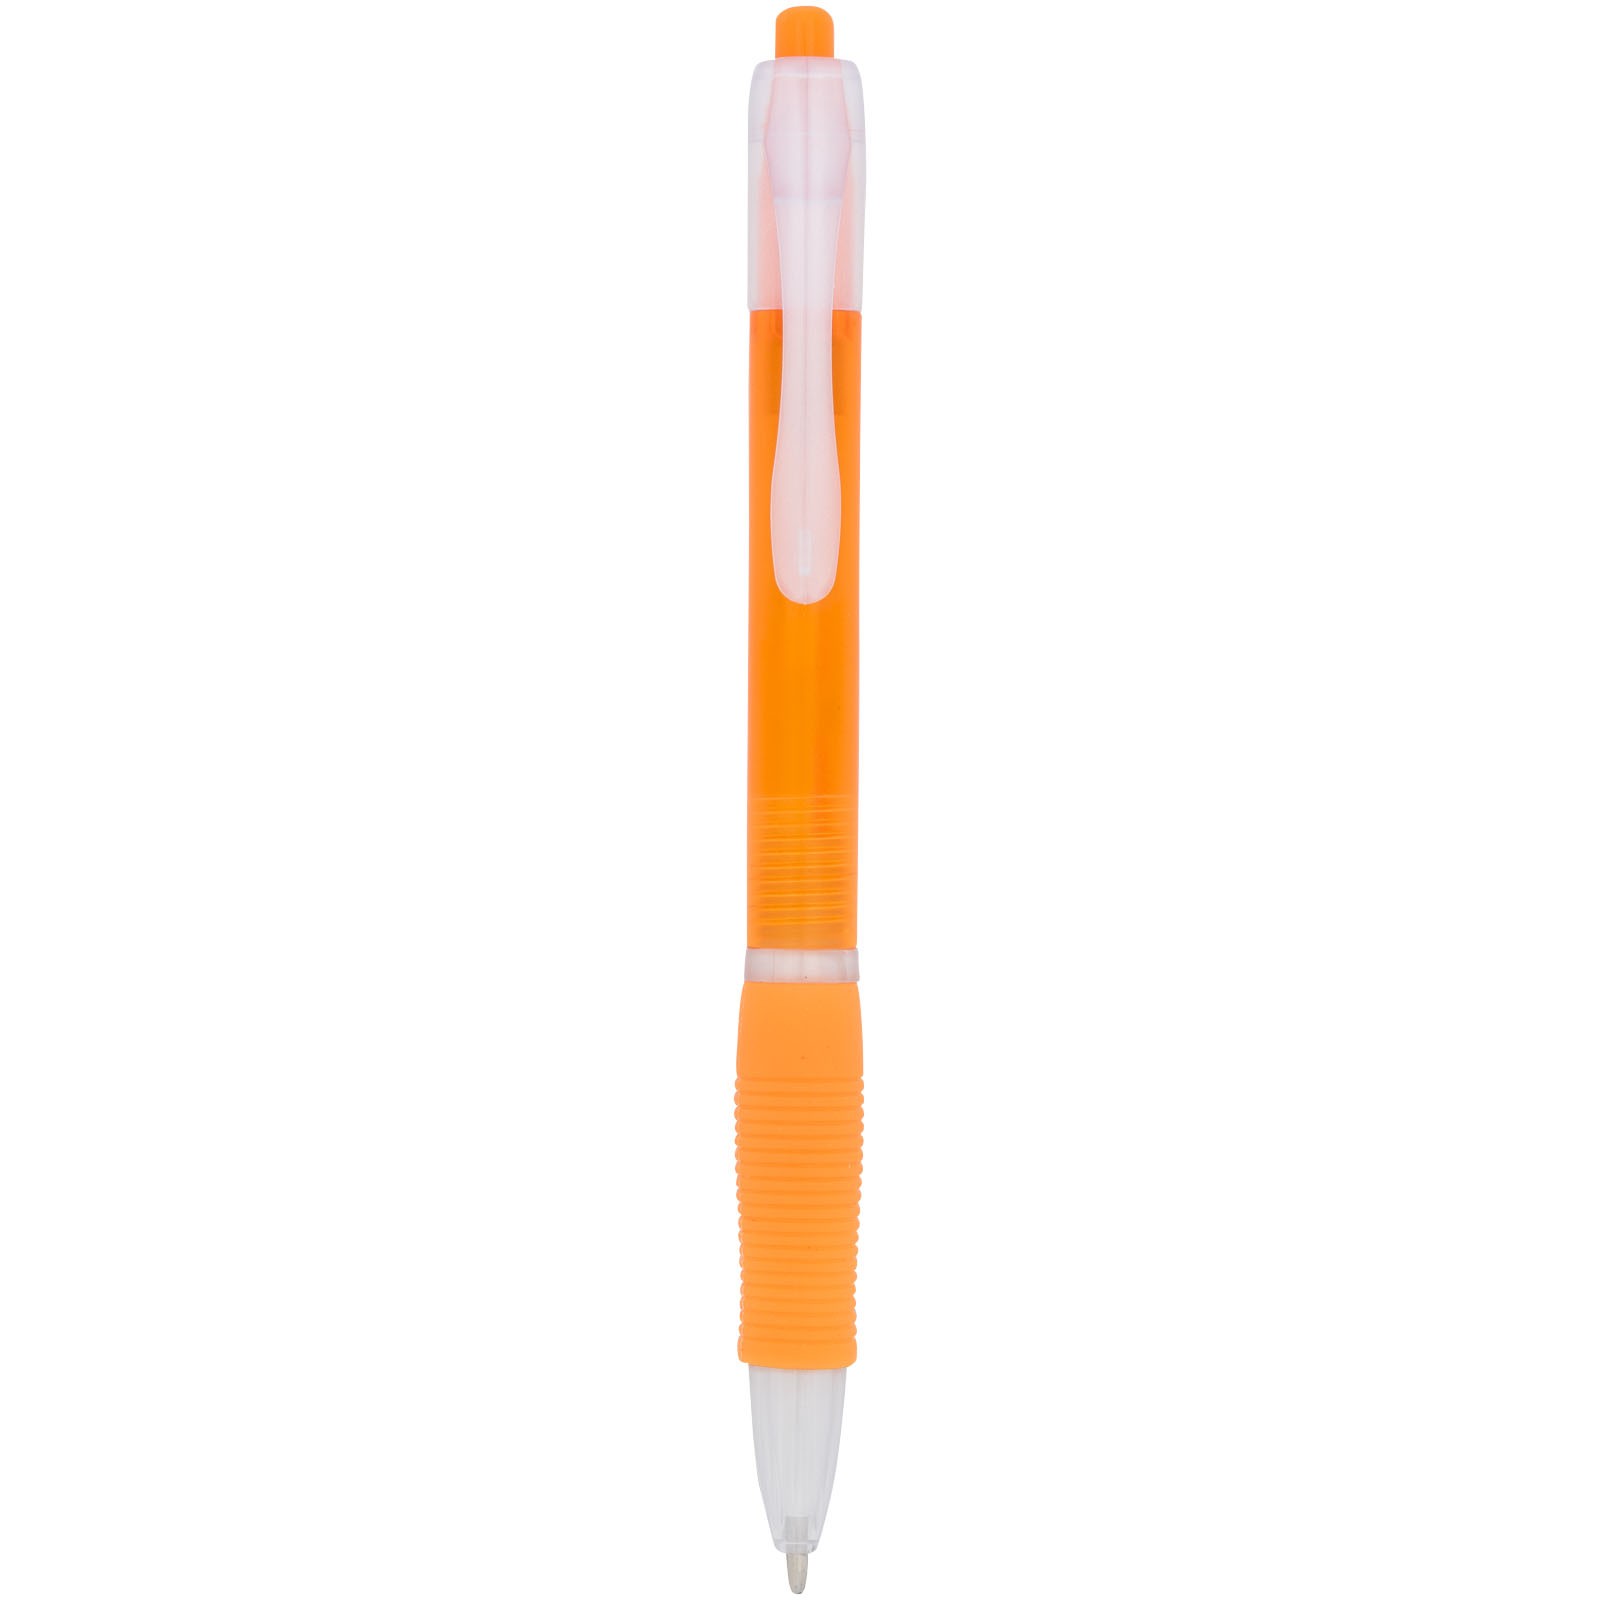 Trim ballpoint pen - Orange